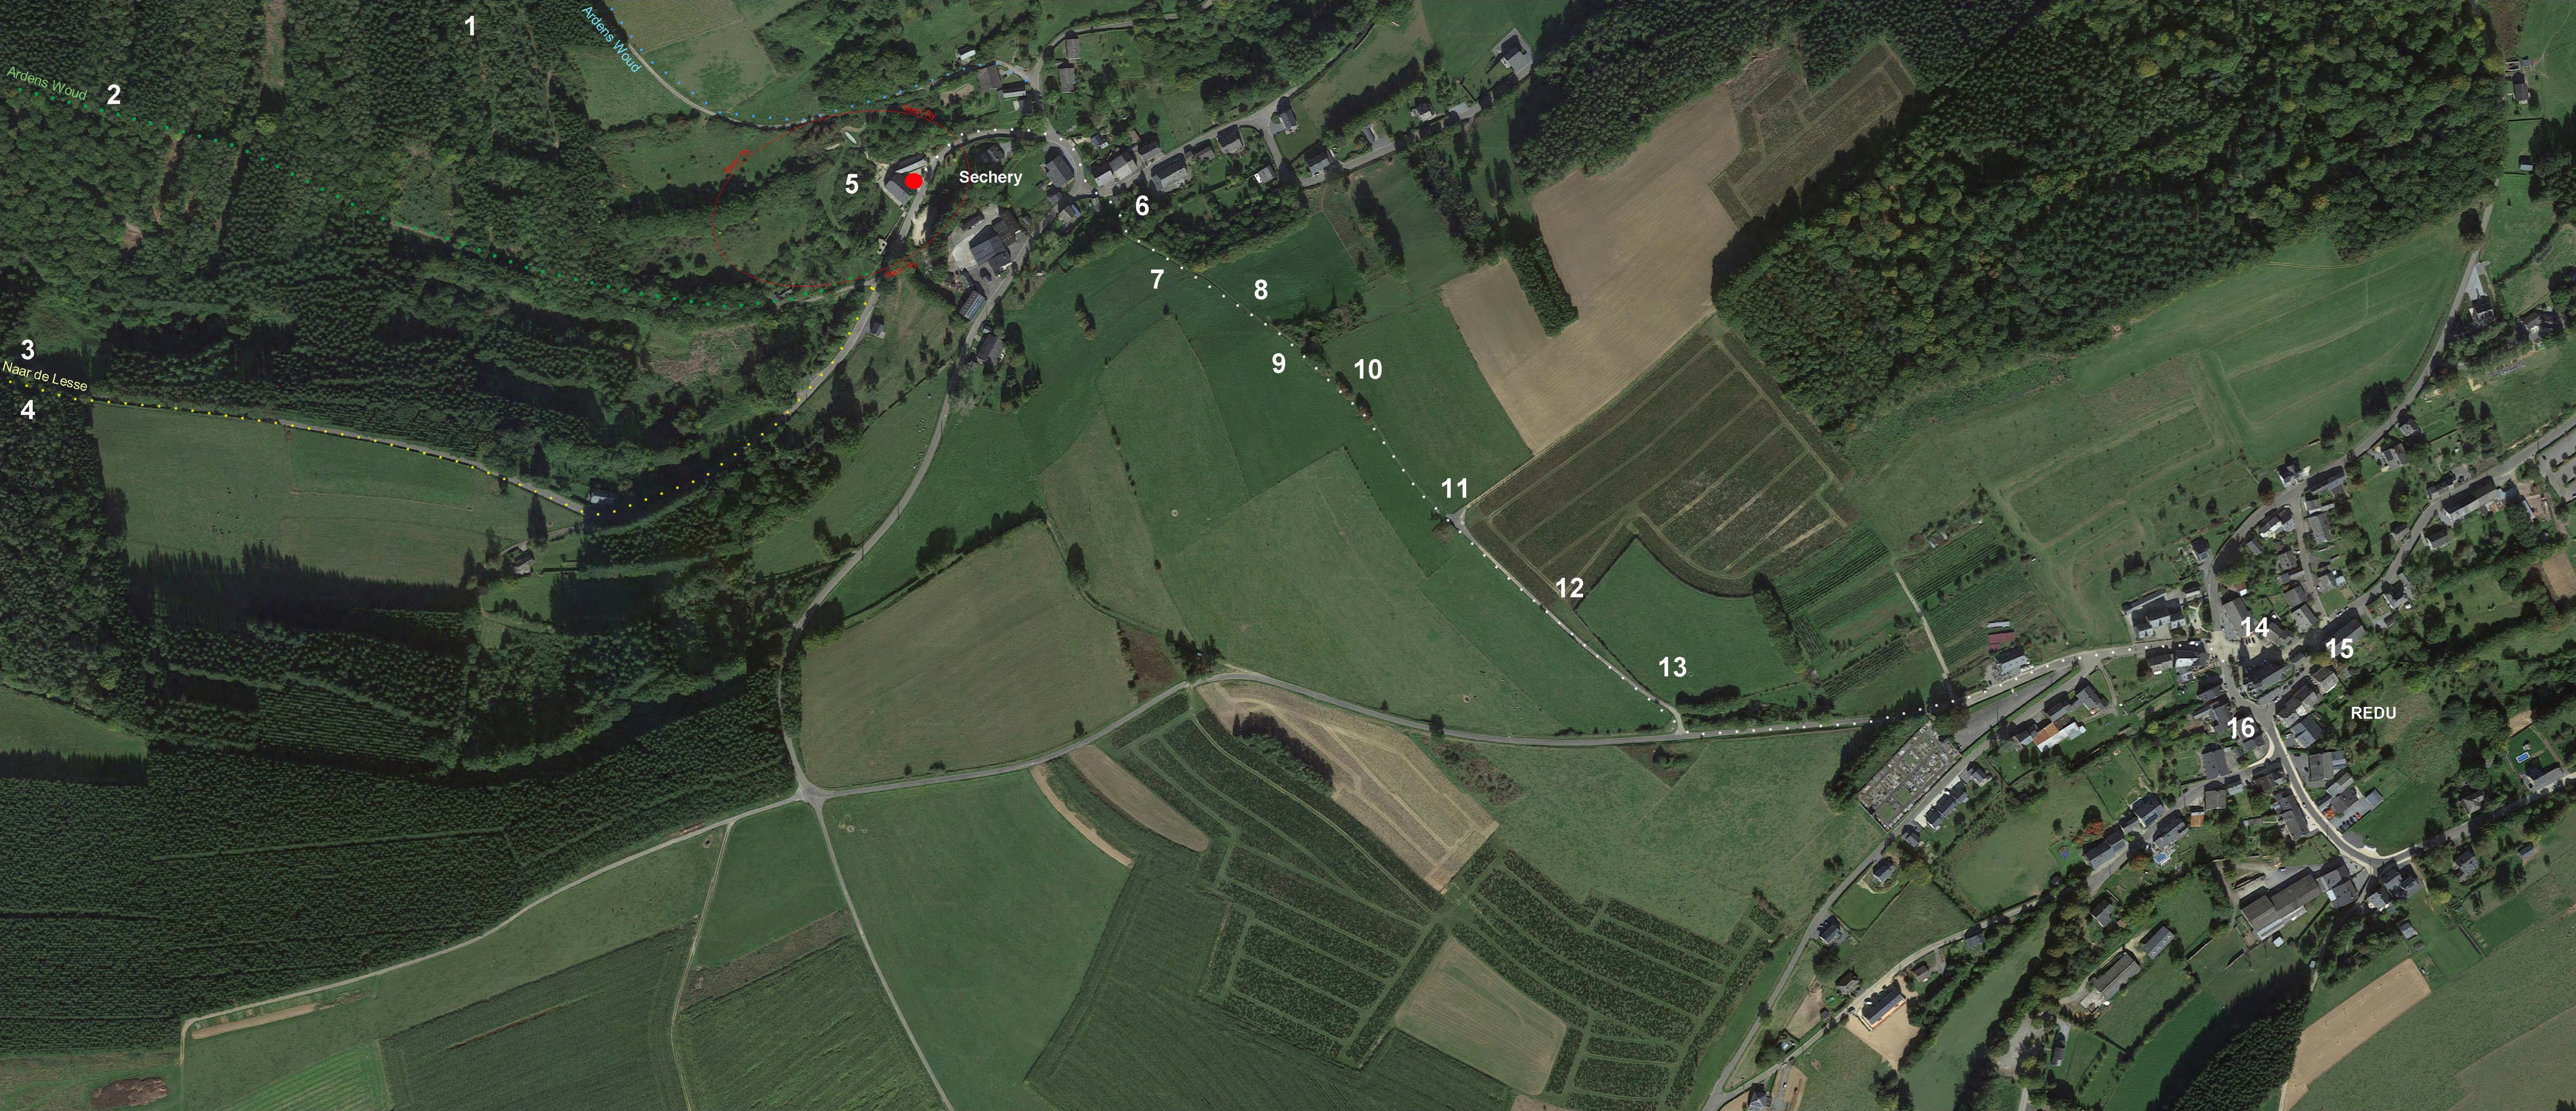 In de omgeving van Sechery bevinden zich ook enkele van de mooiste dorpjes van Wallonie